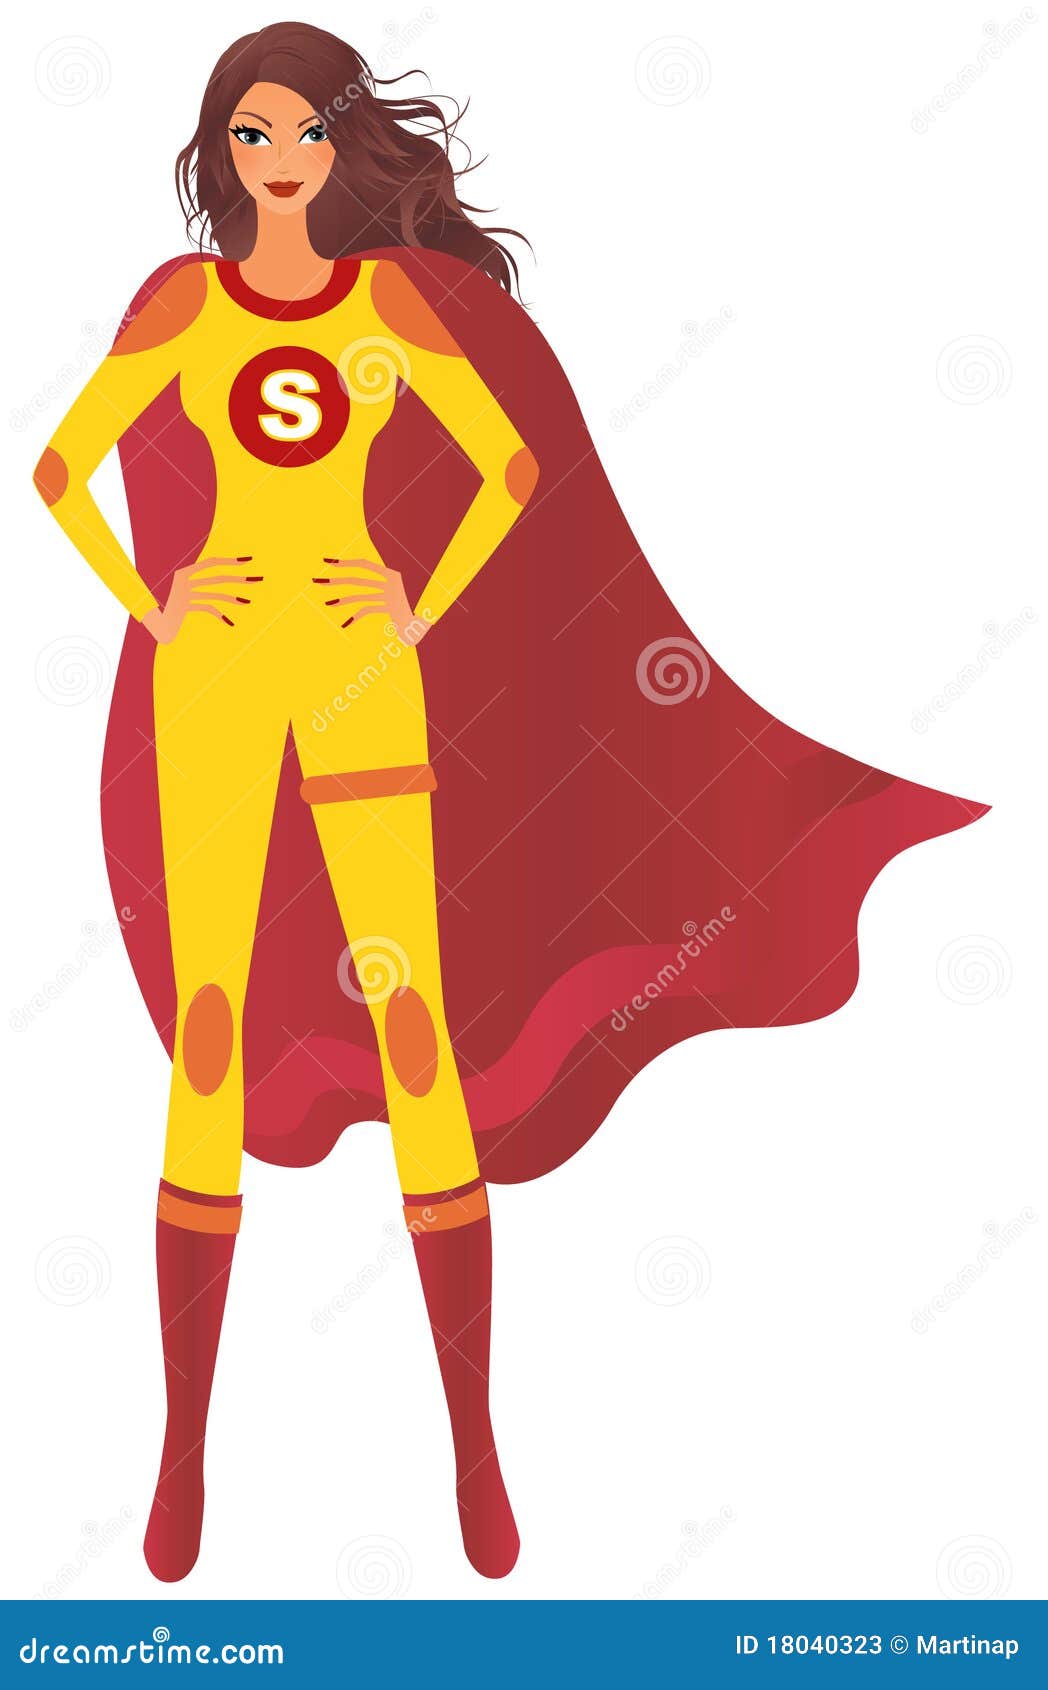 super woman